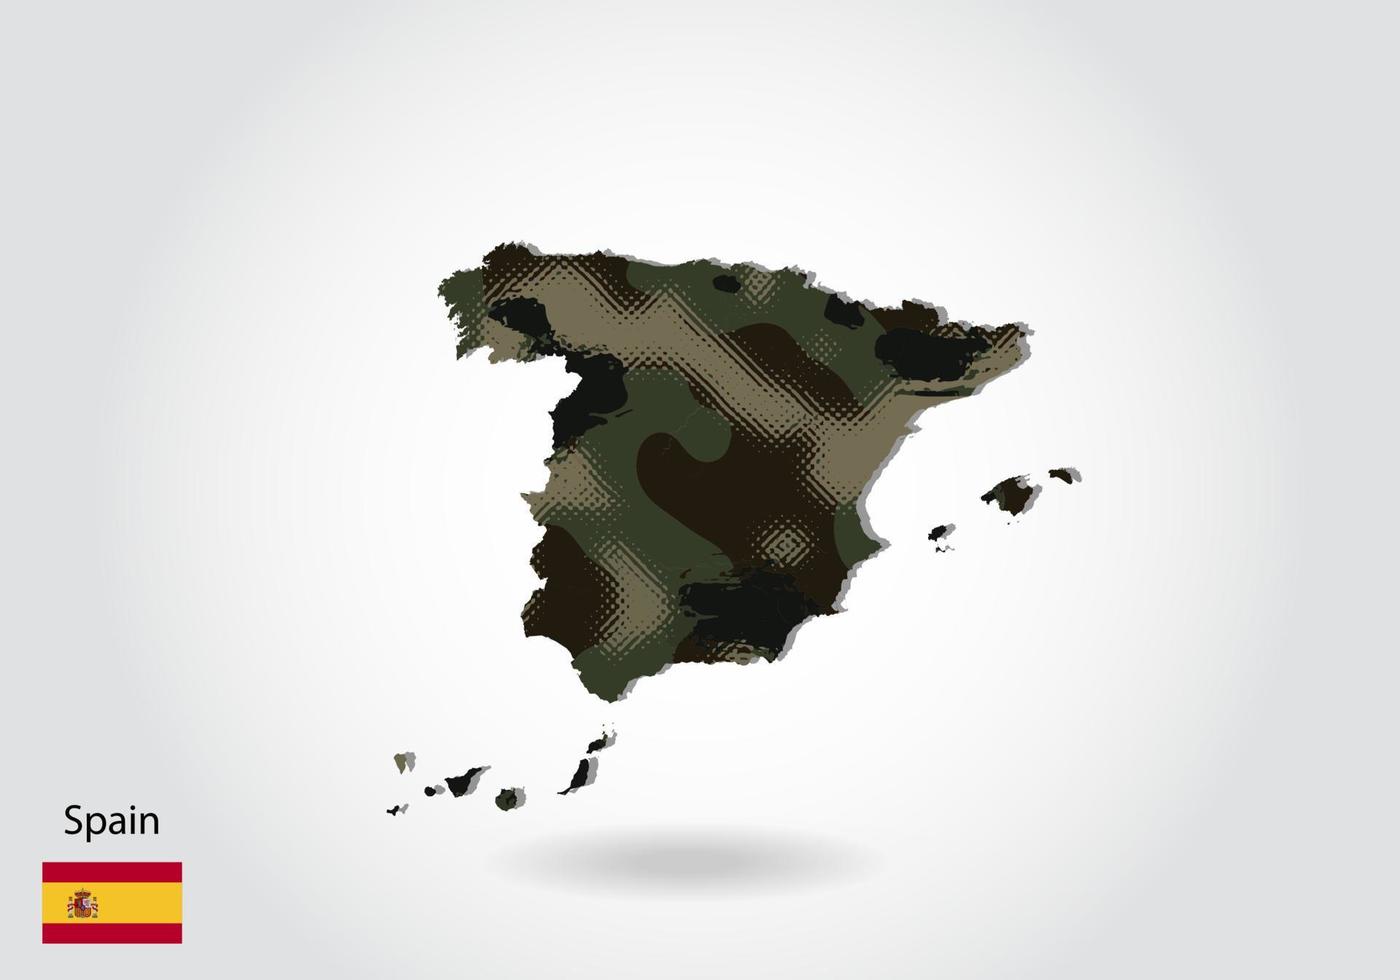 mapa de españa con patrón de camuflaje, bosque - textura verde en el mapa. concepto militar para ejército, soldado y guerra. escudo de armas, bandera. vector